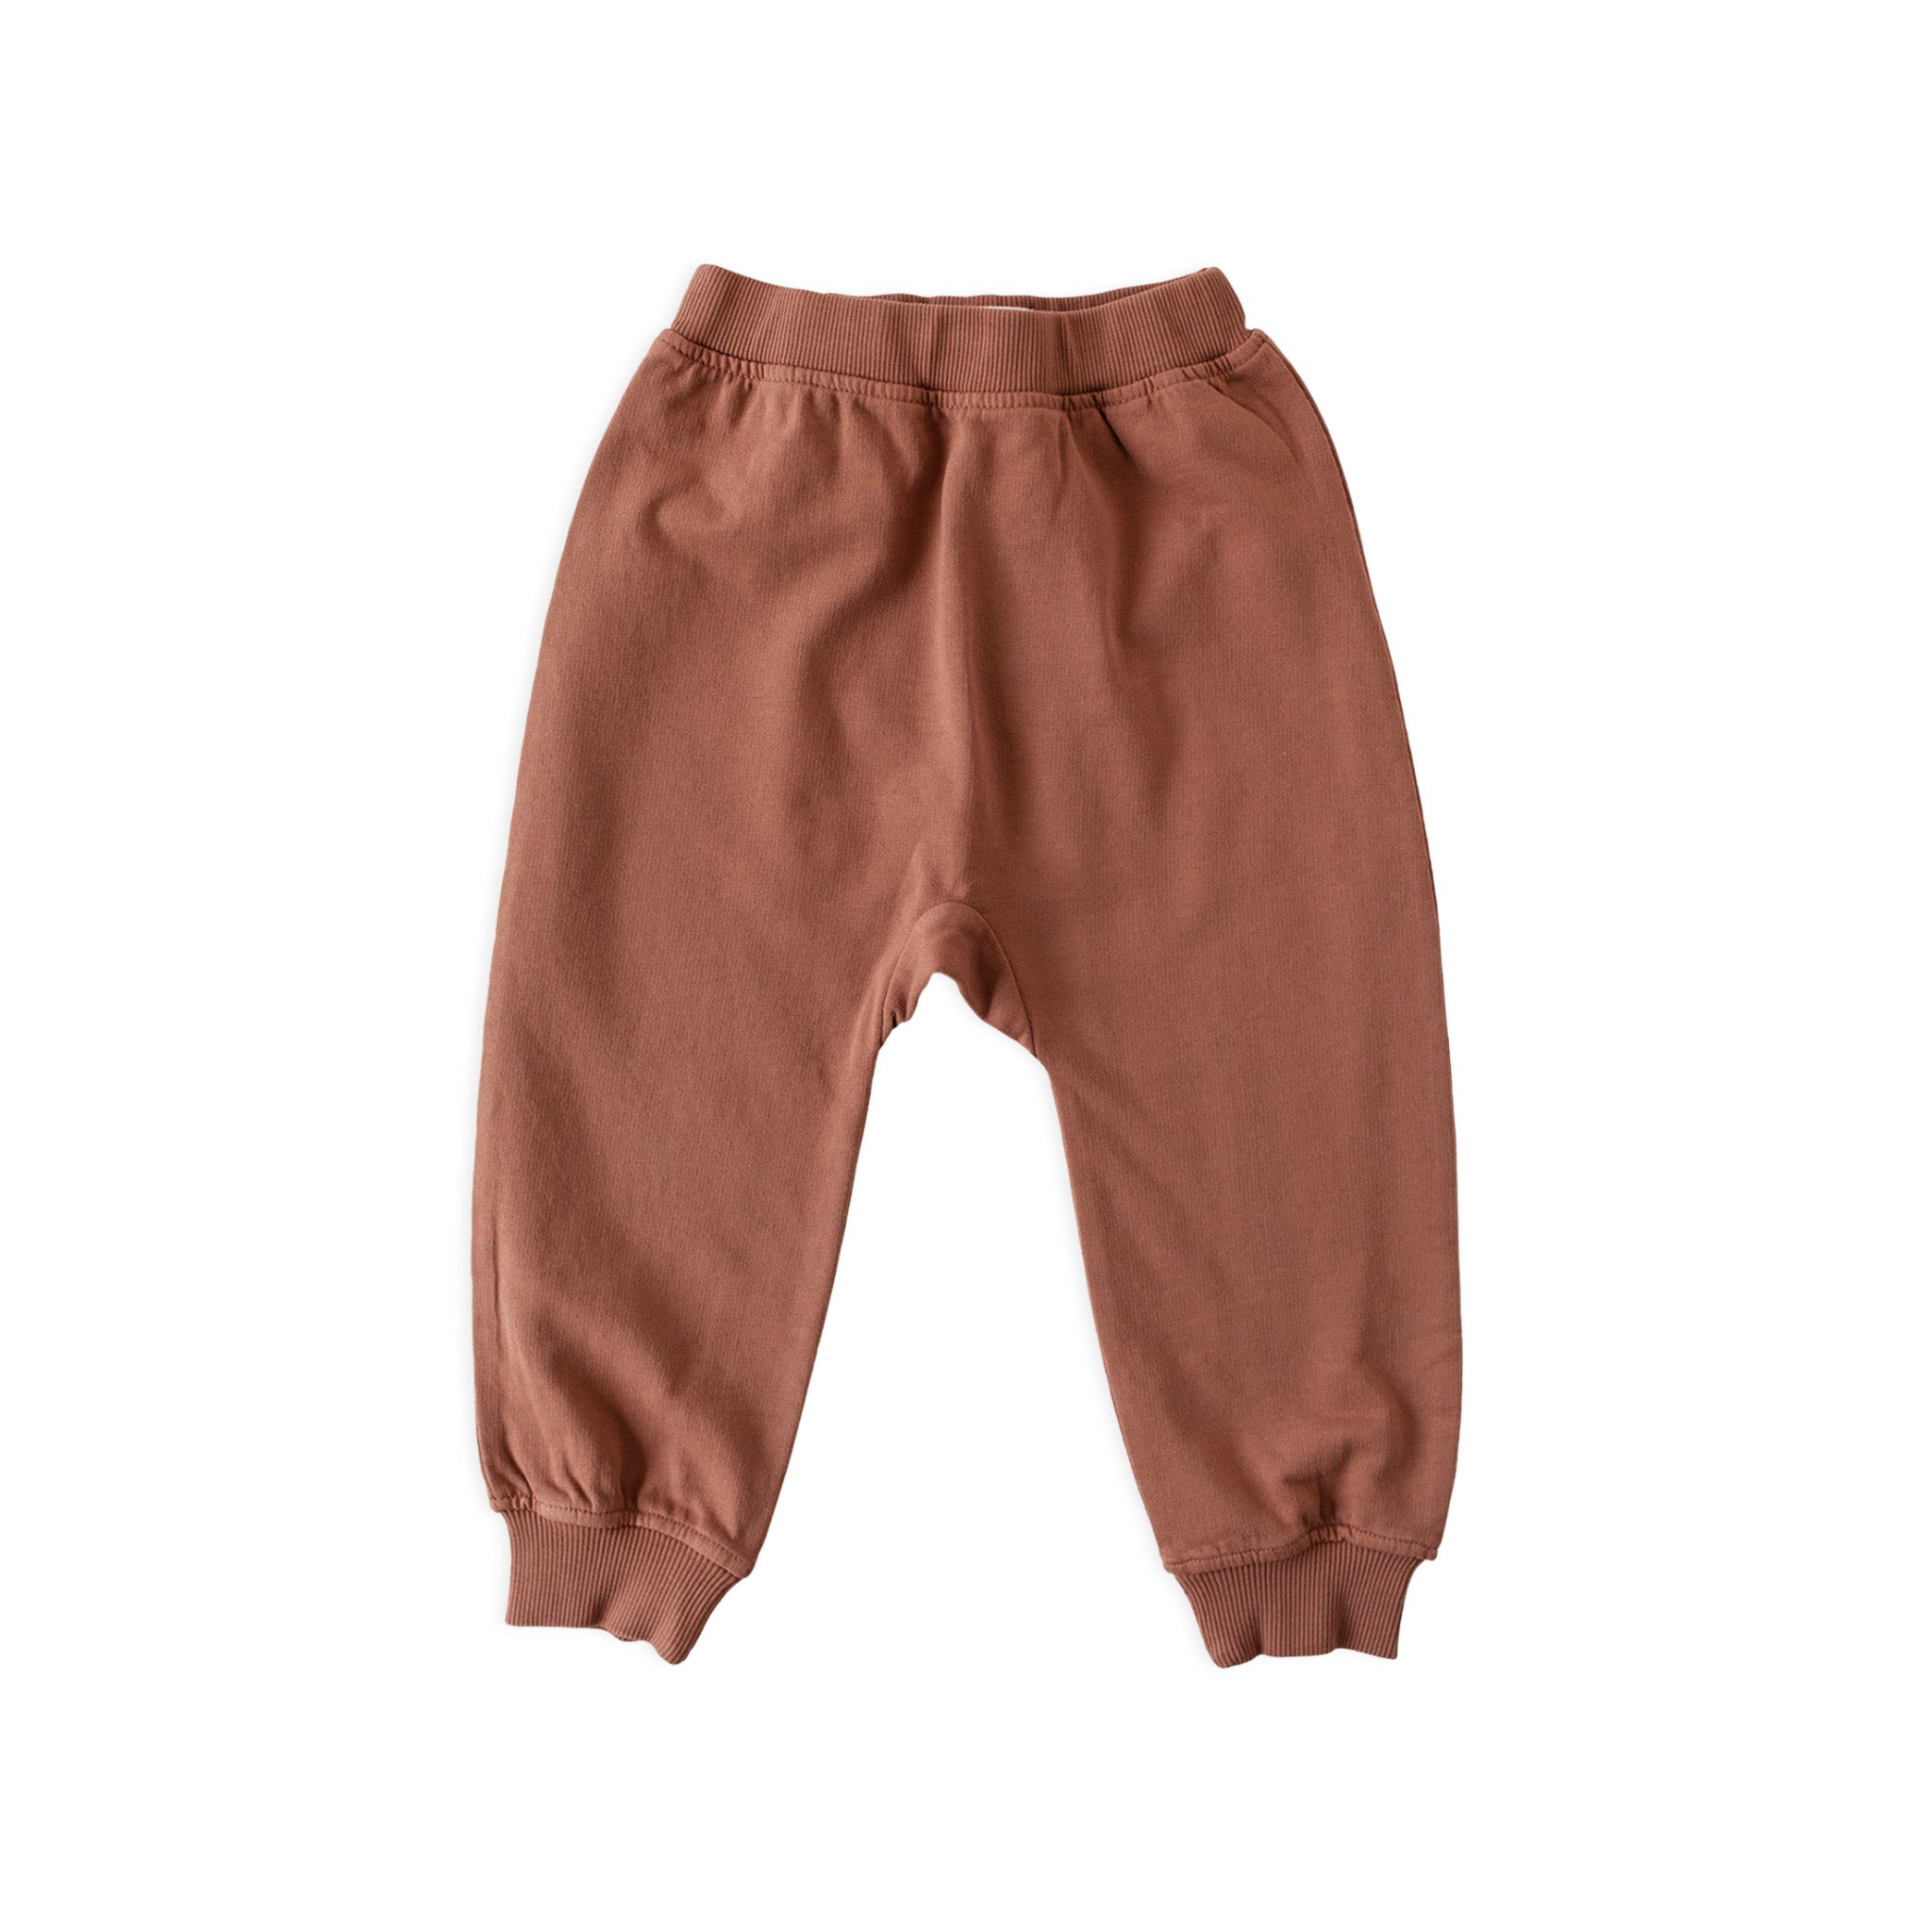 Men's Cotton Harem Pants Brown Drop Crotch Alibaba | AJJAYA